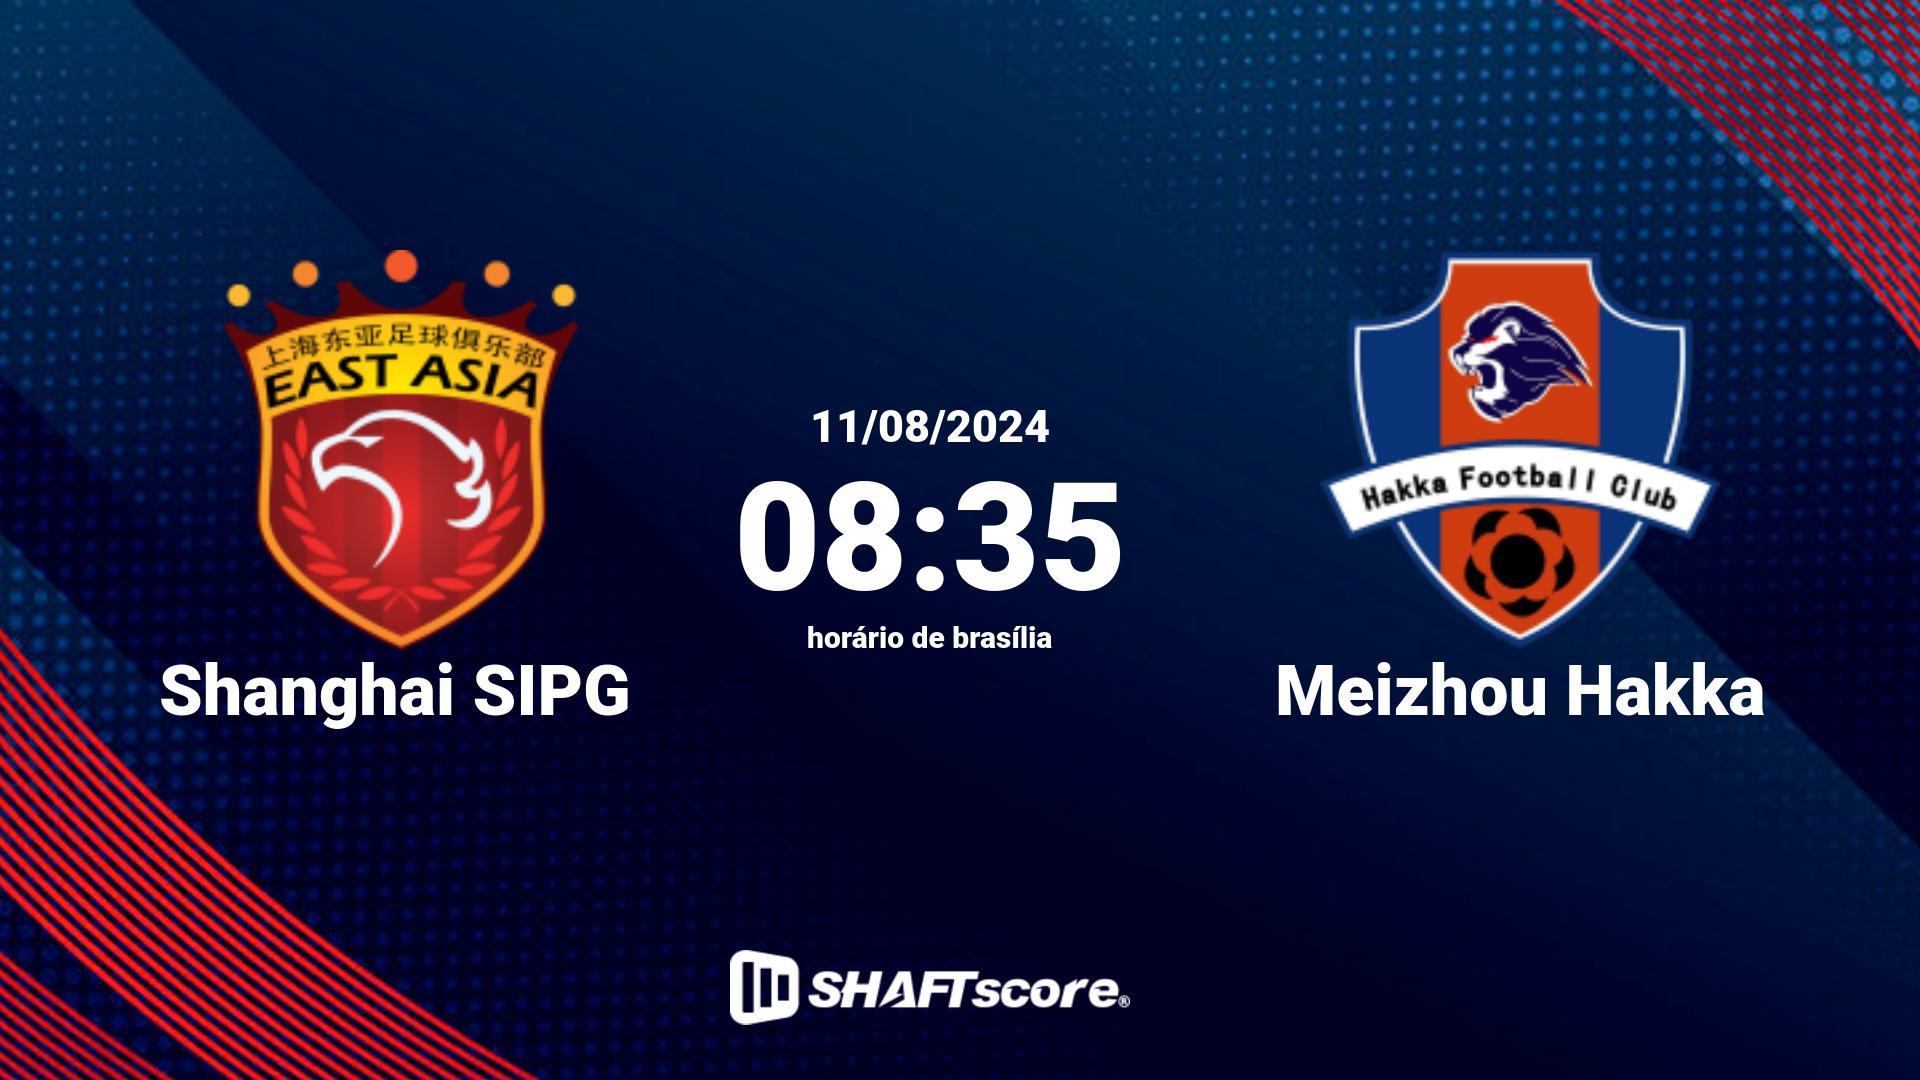 Estatísticas do jogo Shanghai SIPG vs Meizhou Hakka 11.08 08:35